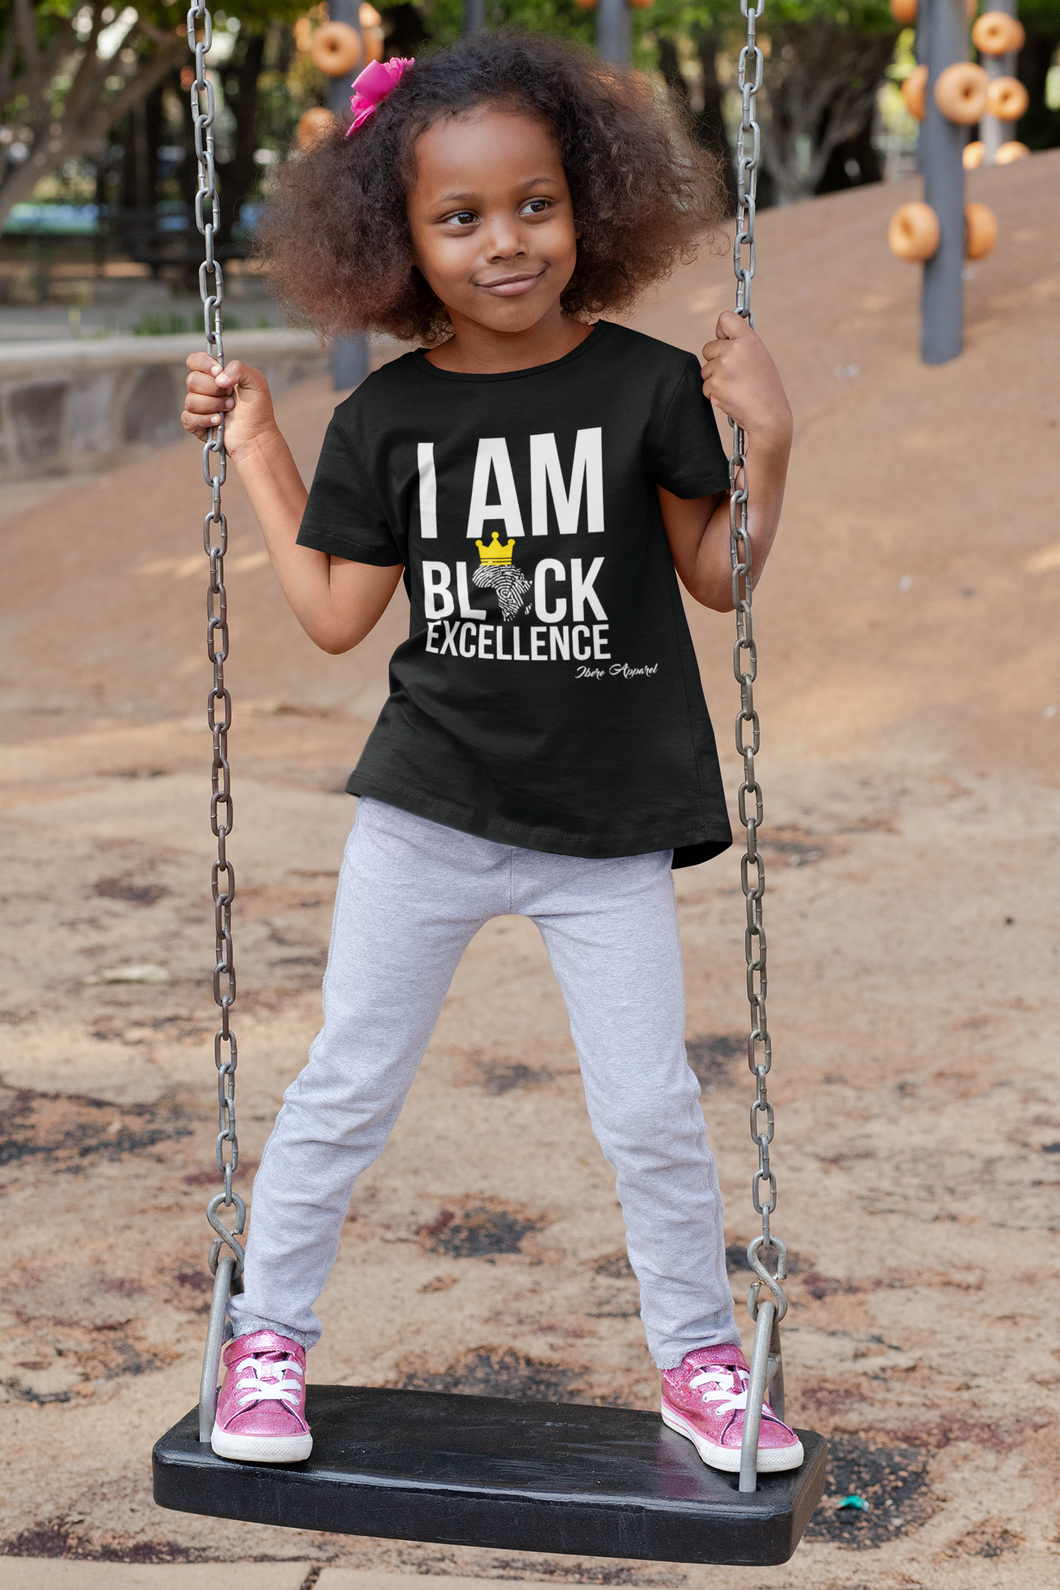 I AM BLACK EXCELLENCE - KIDS TSHIRT